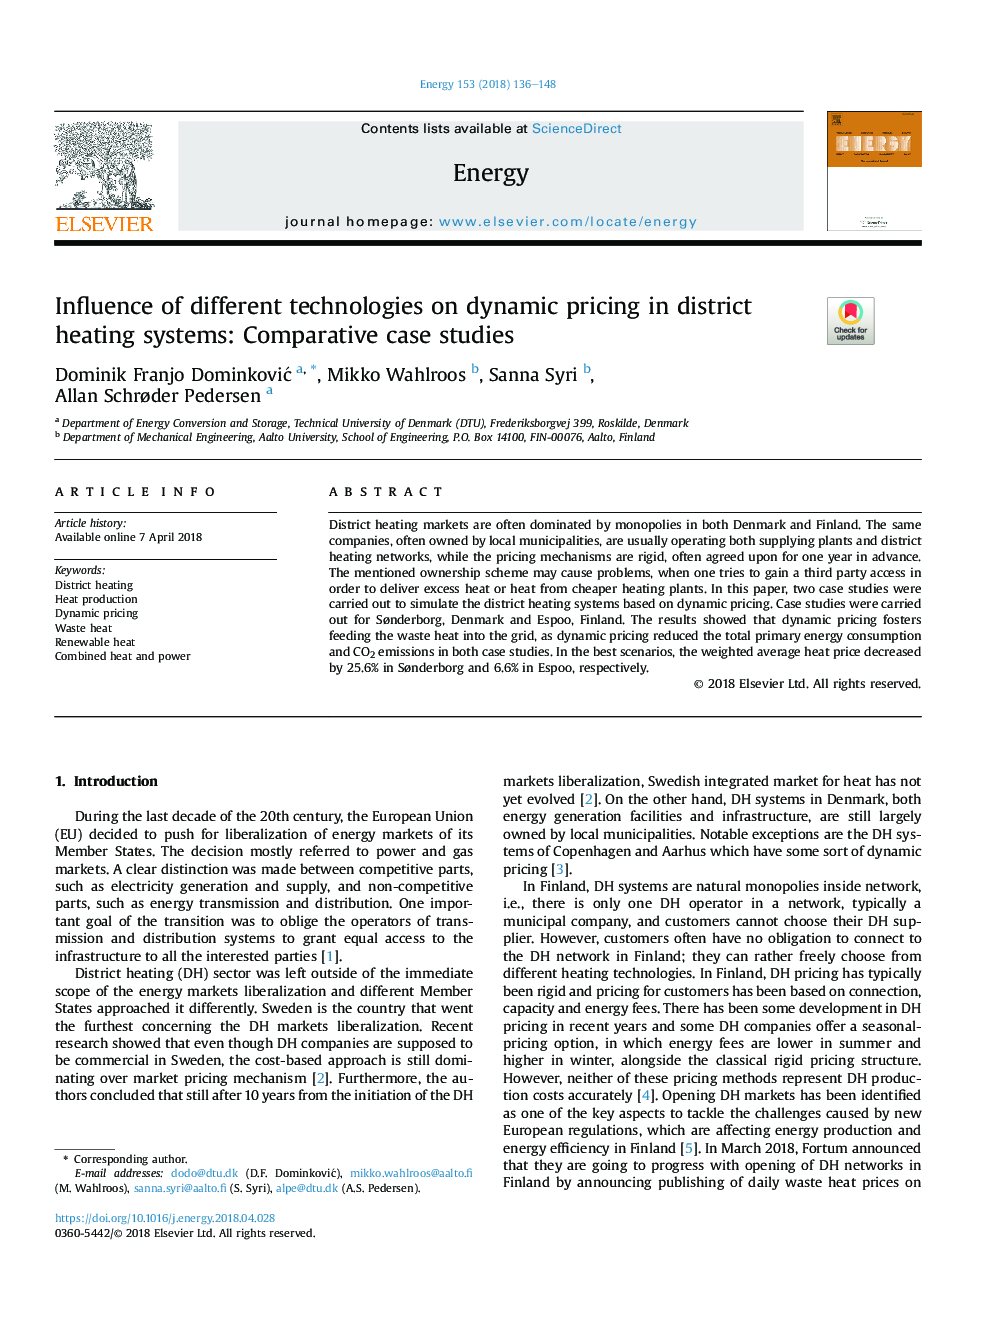 تأثیر تکنولوژی های مختلف بر قیمت گذاری پویا در سیستم های گرمایش مرکزی: مطالعات موردی مقایسه 